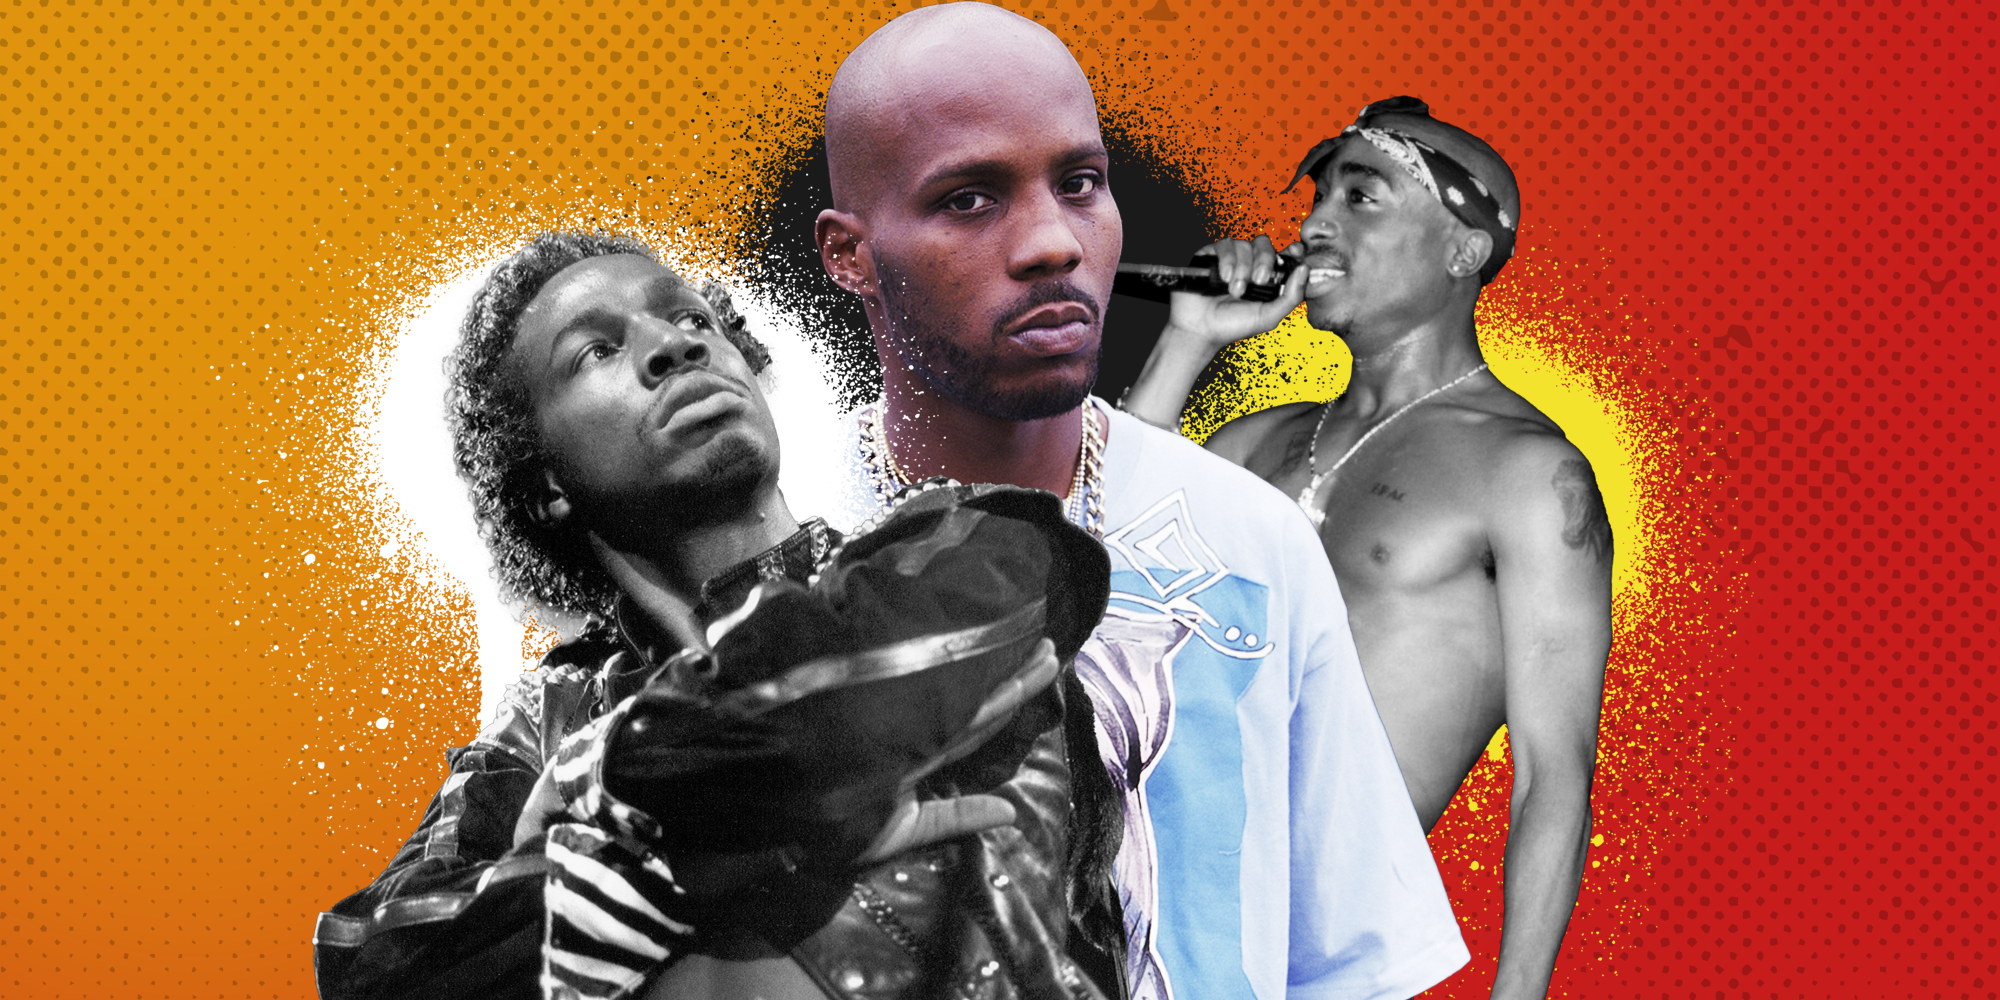 Men's Health Celebrates Hip-Hop 50 With 6 Rap Legends